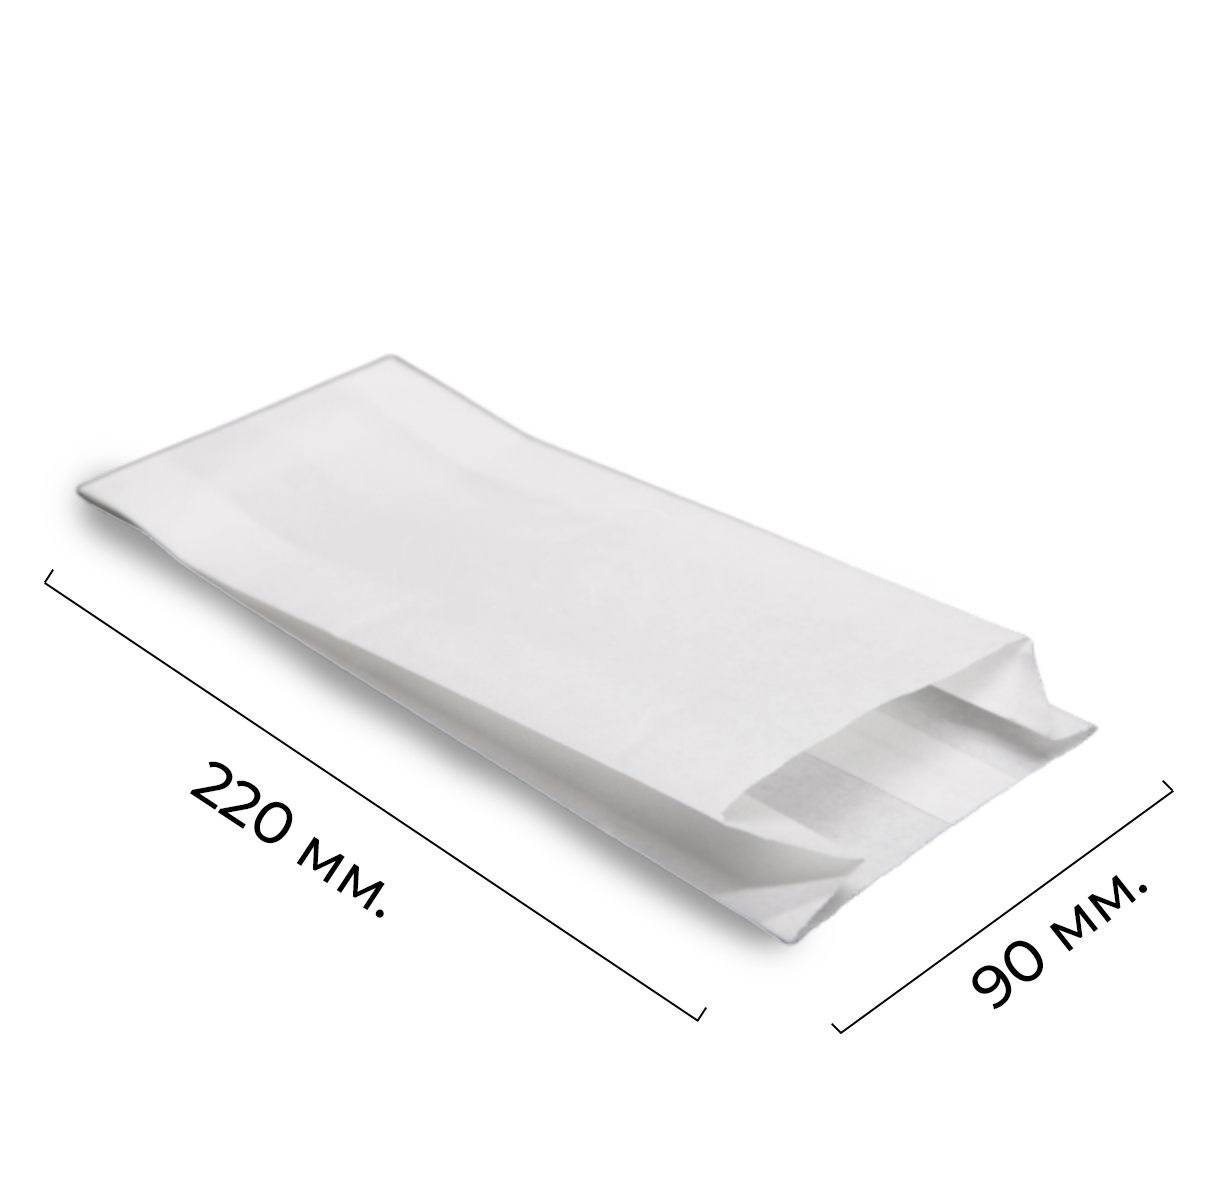 Бумажный пакет под шаверму/шаурму 220*90+40мм жиростойкий белый (100/2500)